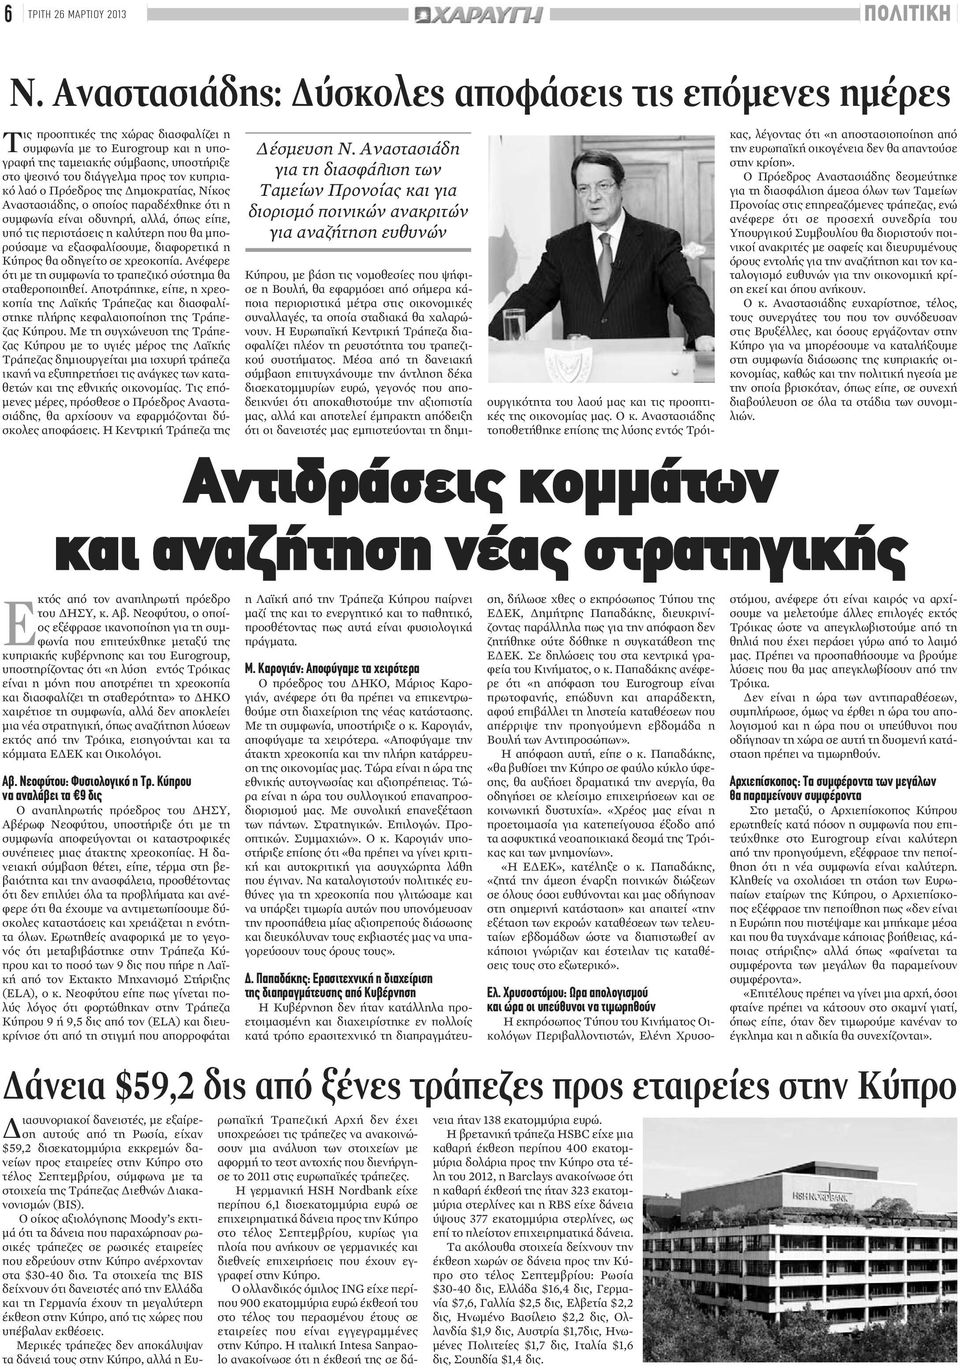 τον κυπριακό λαό ο Πρόεδρος της Δημοκρατίας, Νίκος Αναστασιάδης, ο οποίος παραδέχθηκε ότι η συμφωνία είναι οδυνηρή, αλλά, όπως είπε, υπό τις περιστάσεις η καλύτερη που θα μπορούσαμε να εξασφαλίσουμε,